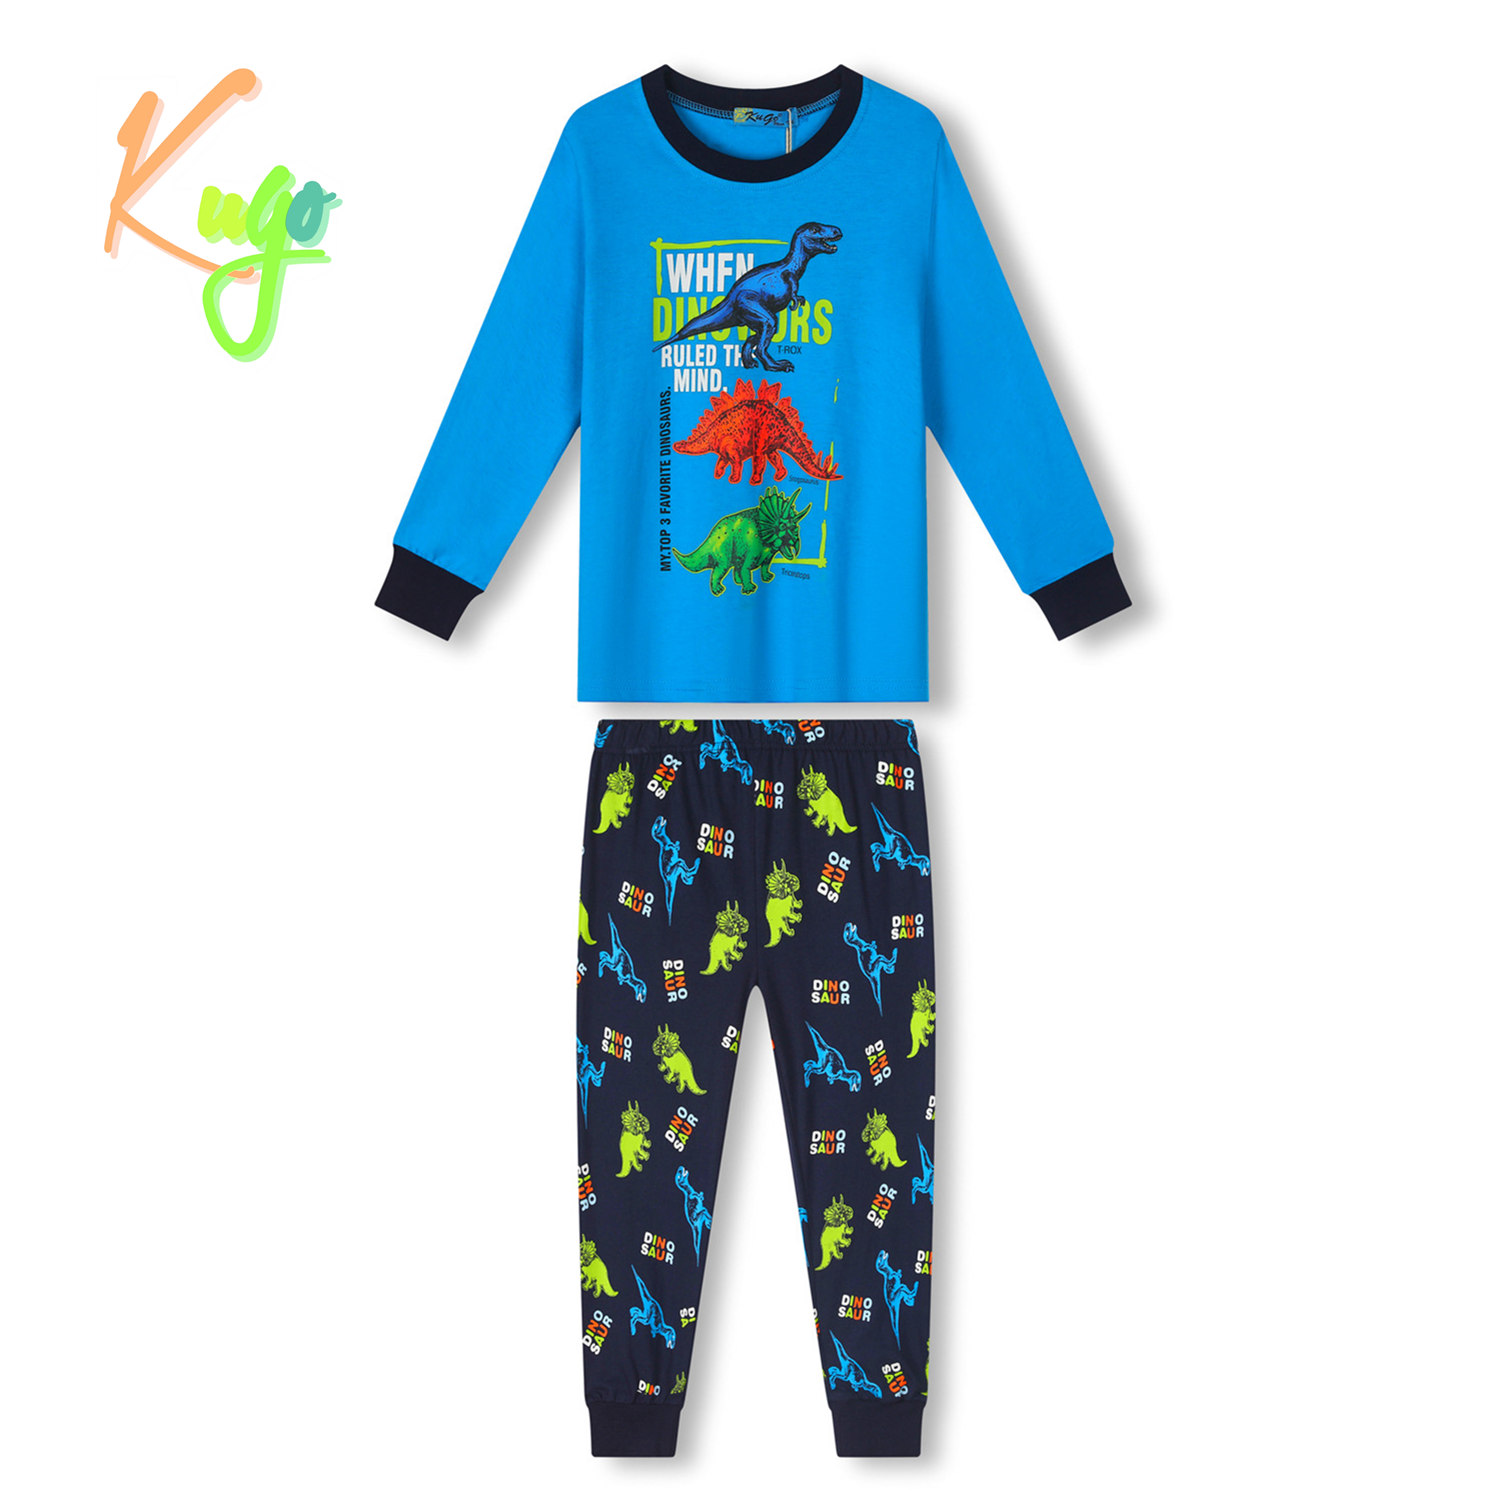 Chlapecké pyžamo - KUGO MP3776, tyrkysová/ tmavě modrá Barva: Tyrkysová, Velikost: 98